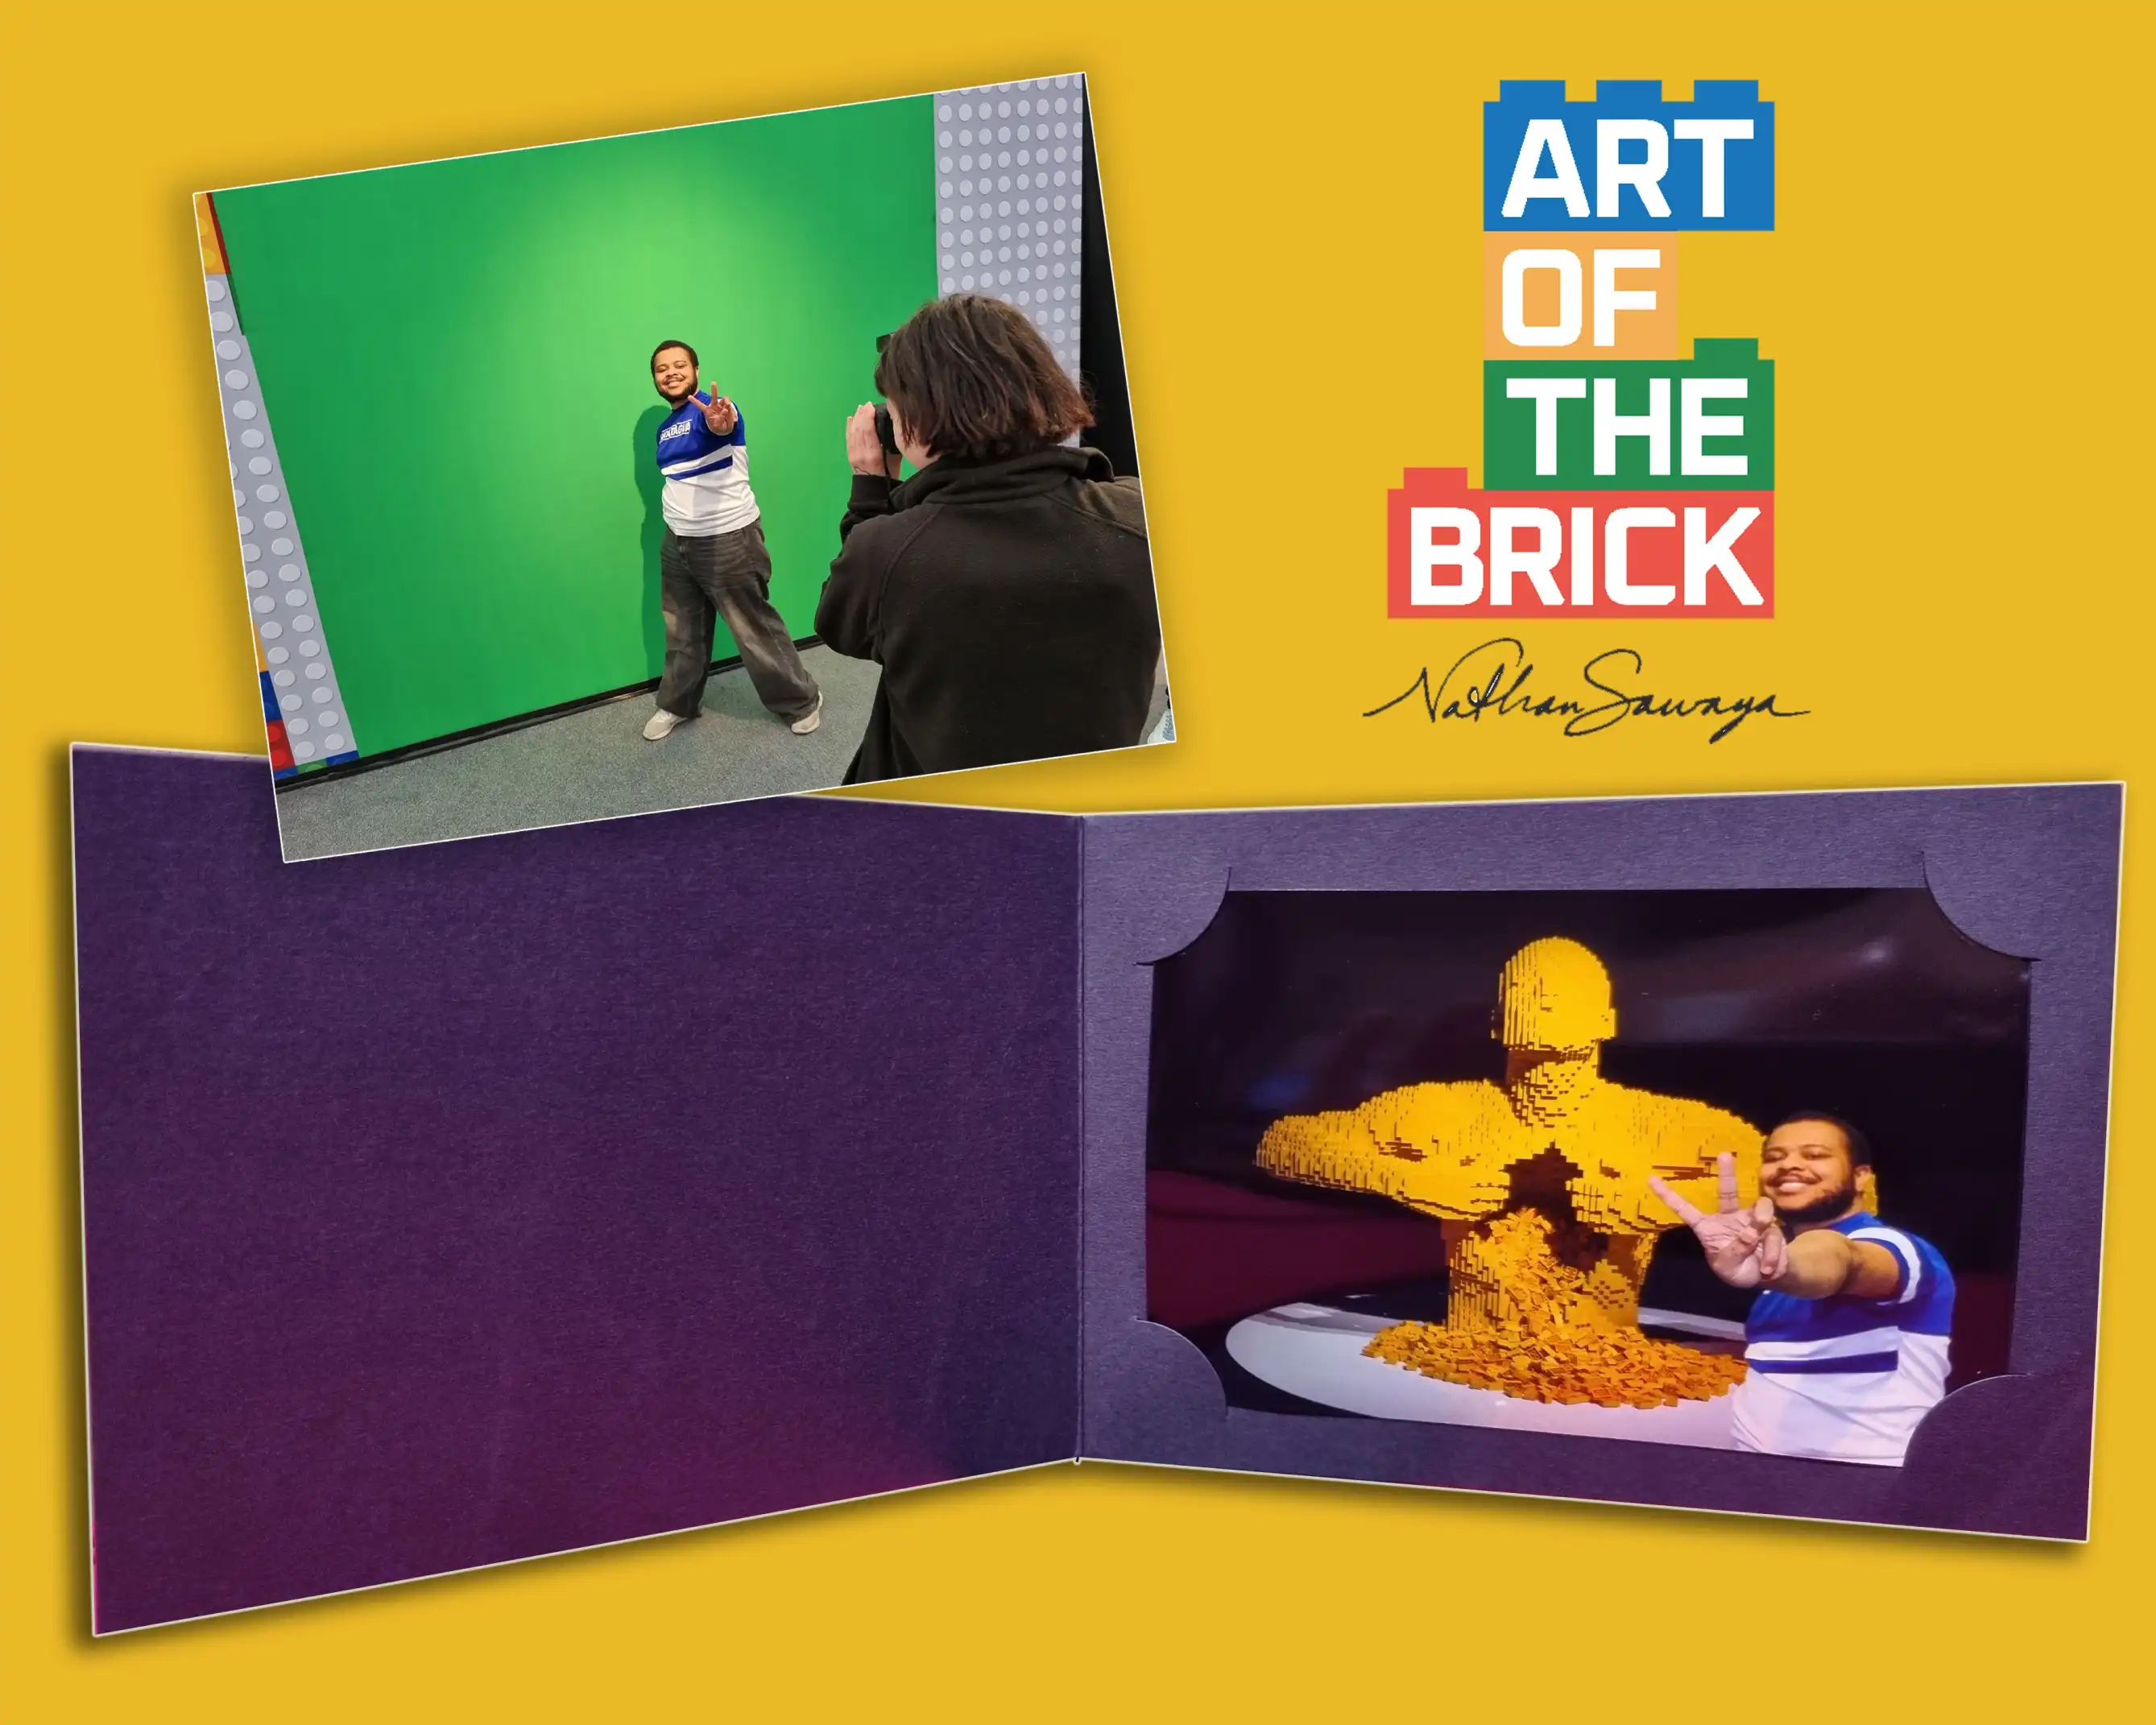  - The Art of the Brick London: A LEGO® Art Exhibit